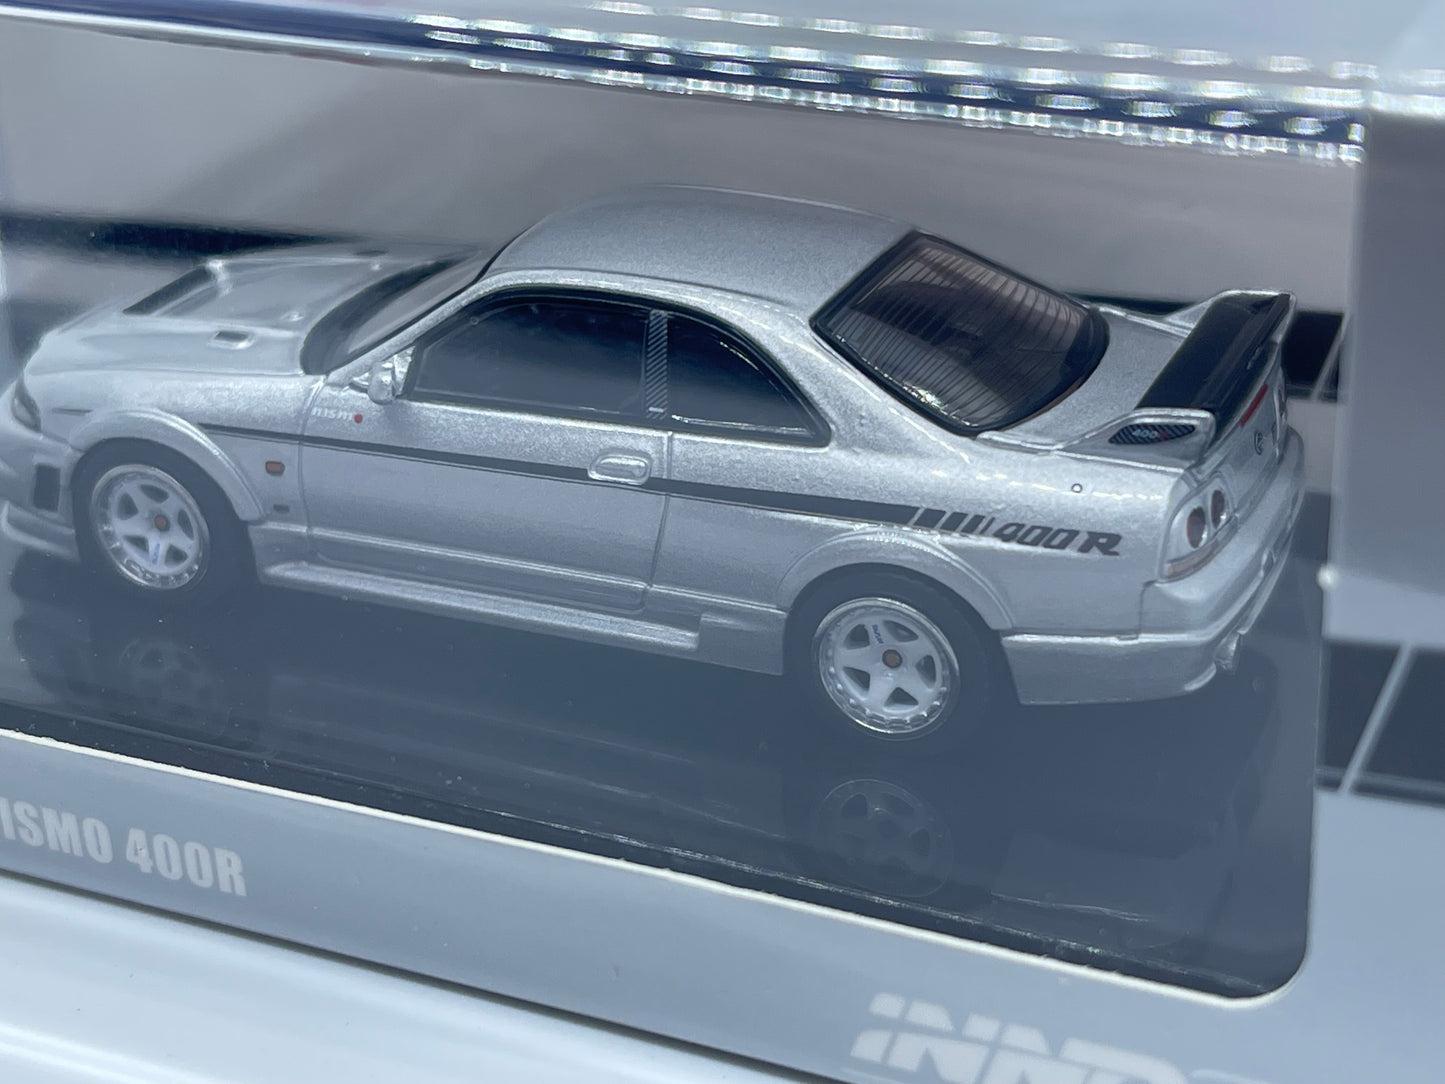 Inno64 - Nissan Skyline R33 GT-R Nismo 400R Sonic Silver